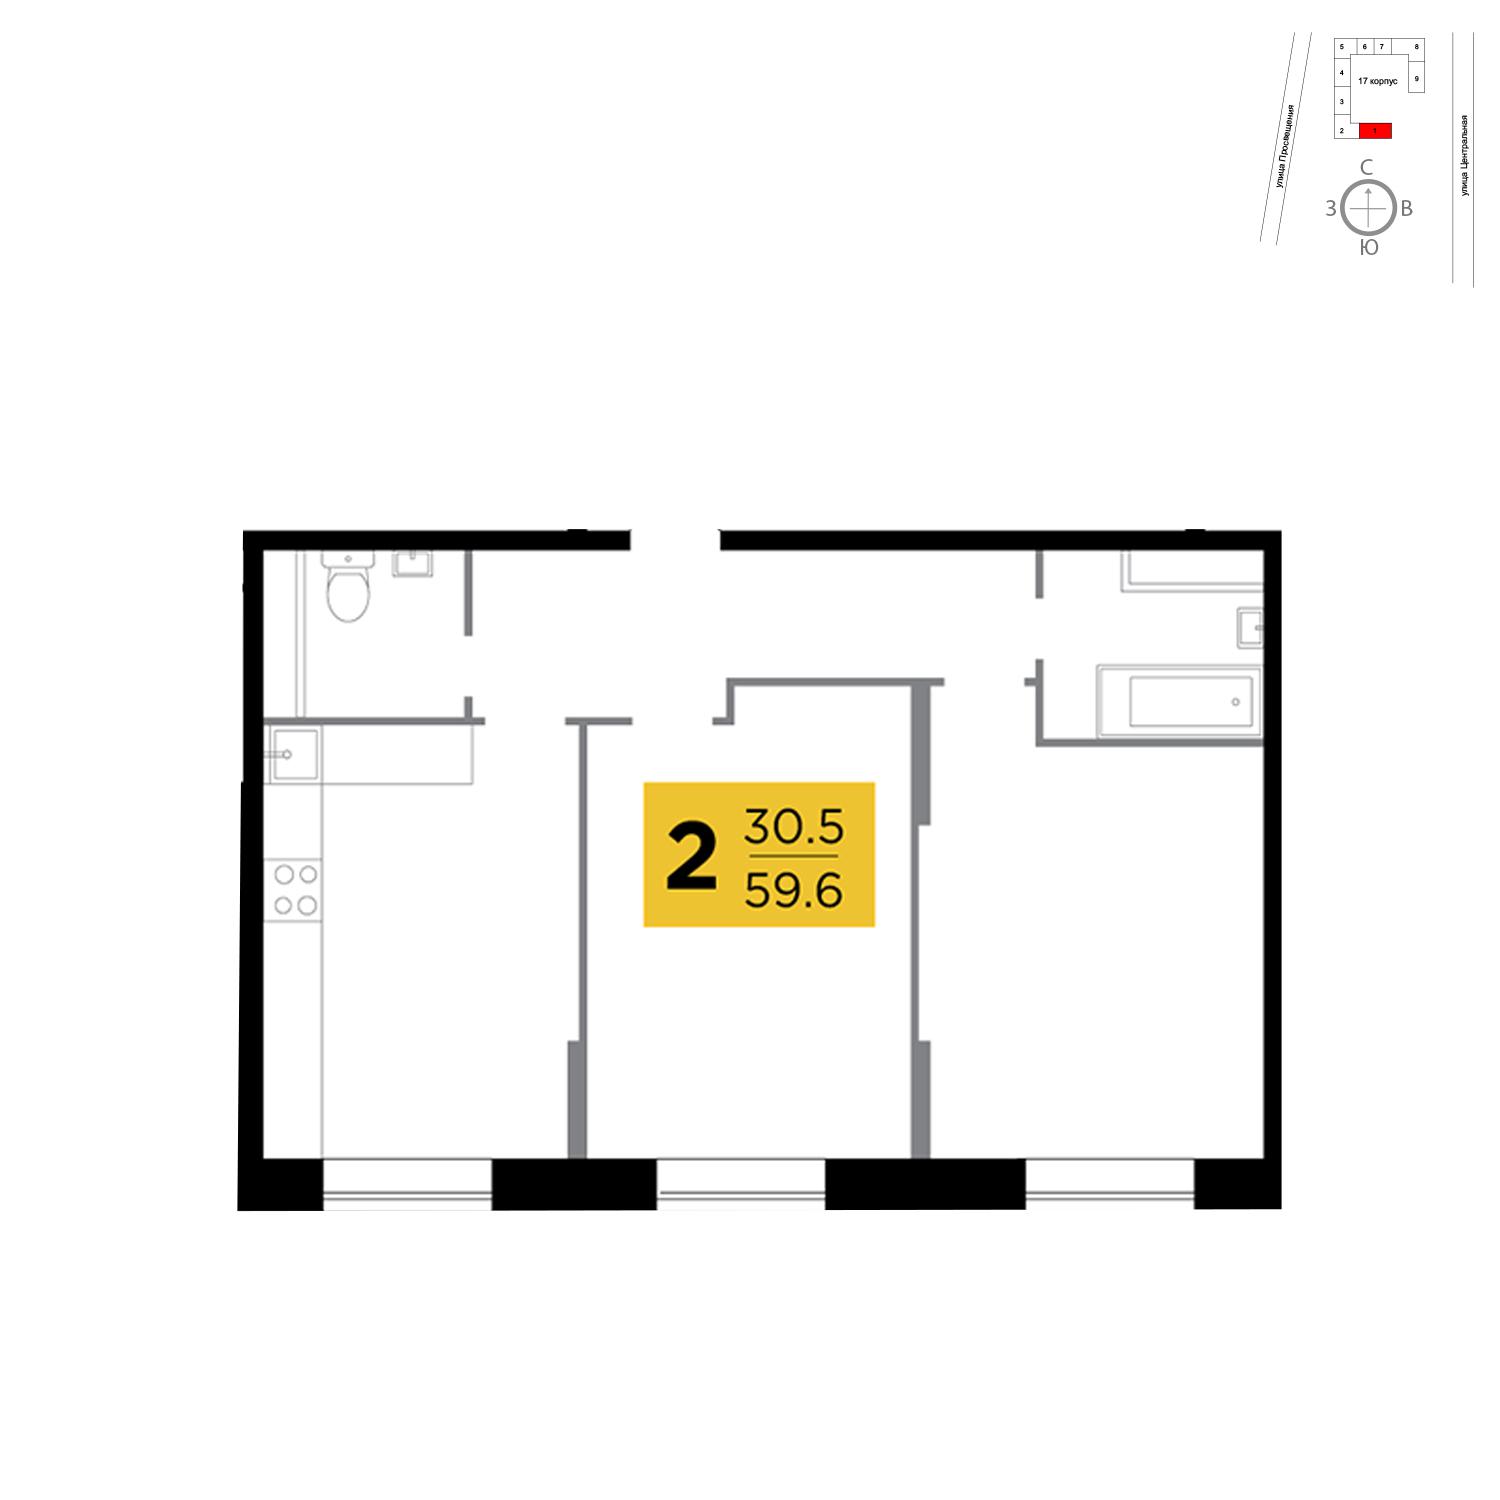 Продаётся 2-комнатная квартира в новостройке 59.6 кв.м. этаж 1/16 за 4 385 010 руб 